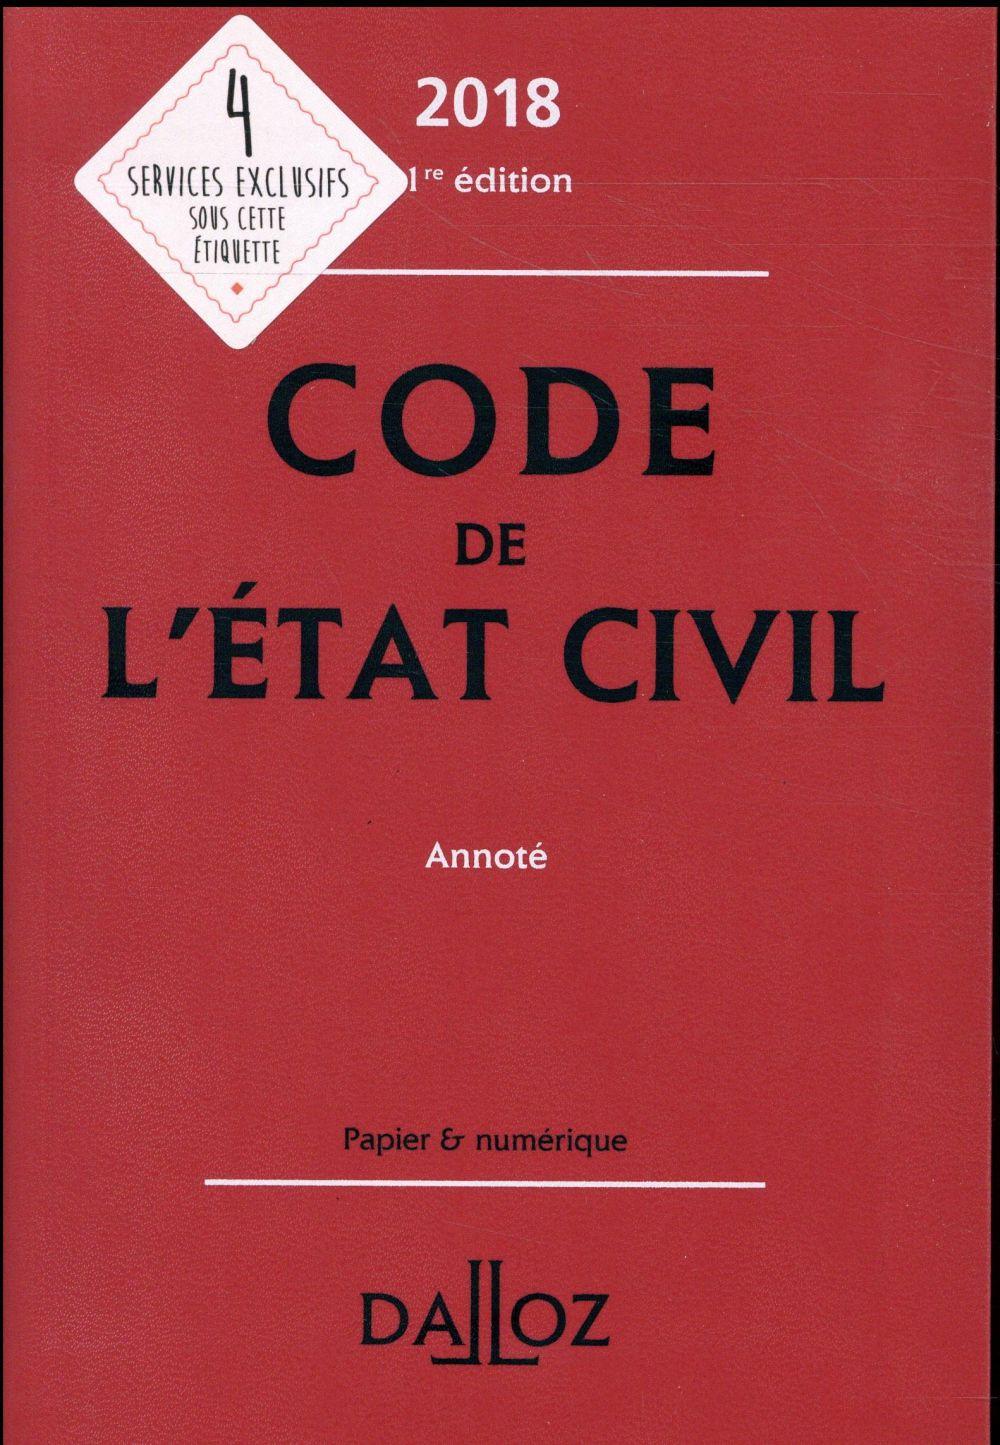 Vente Livre :                                    Code de l'état civil annoté(édition 2018)
- Collectif                                     